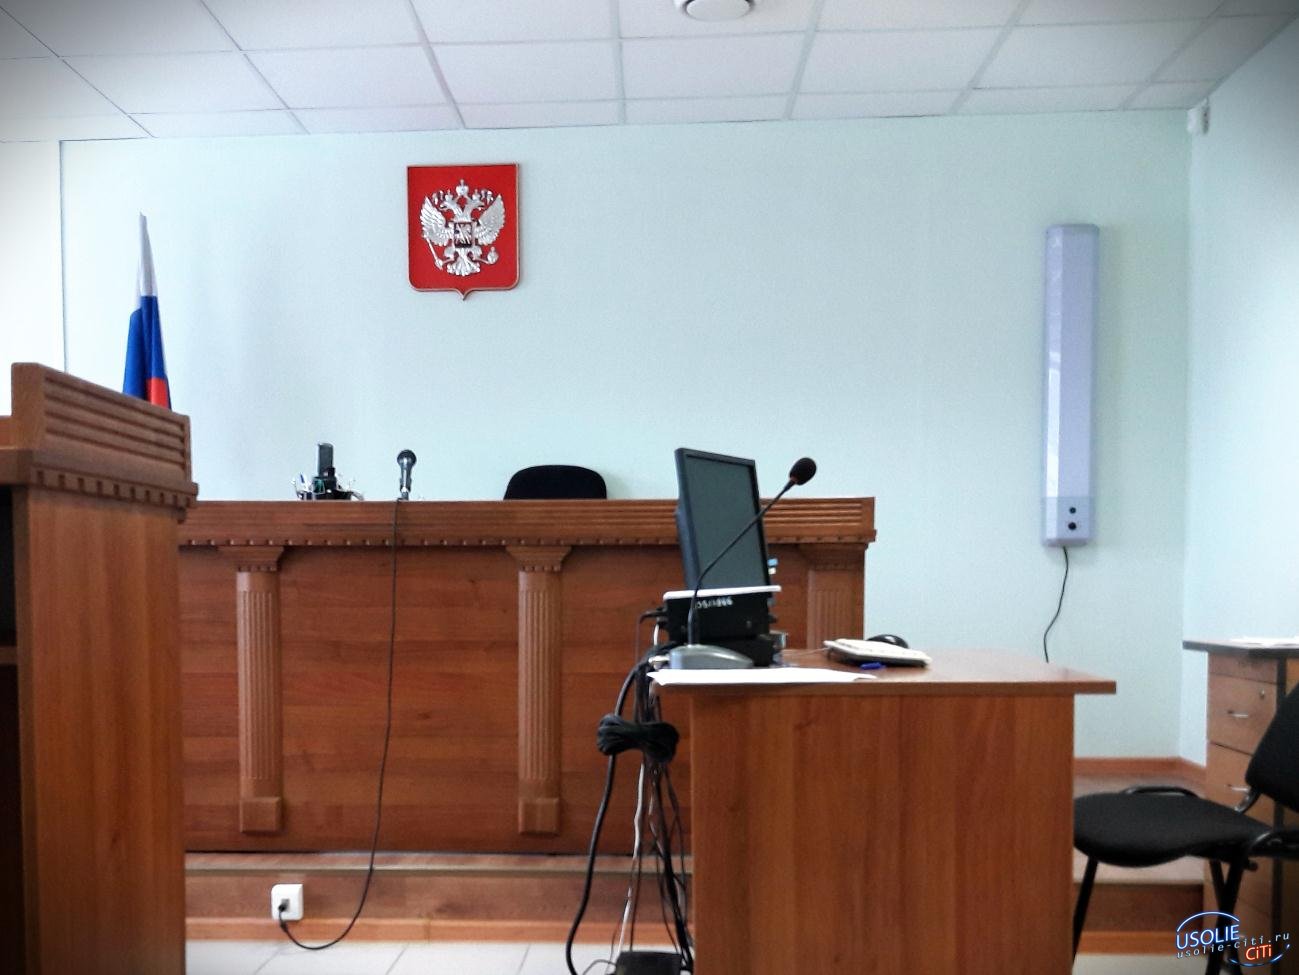 Две жительницы Усолья отсудили у продавцов массажных накидок больше 450 тысяч рублей